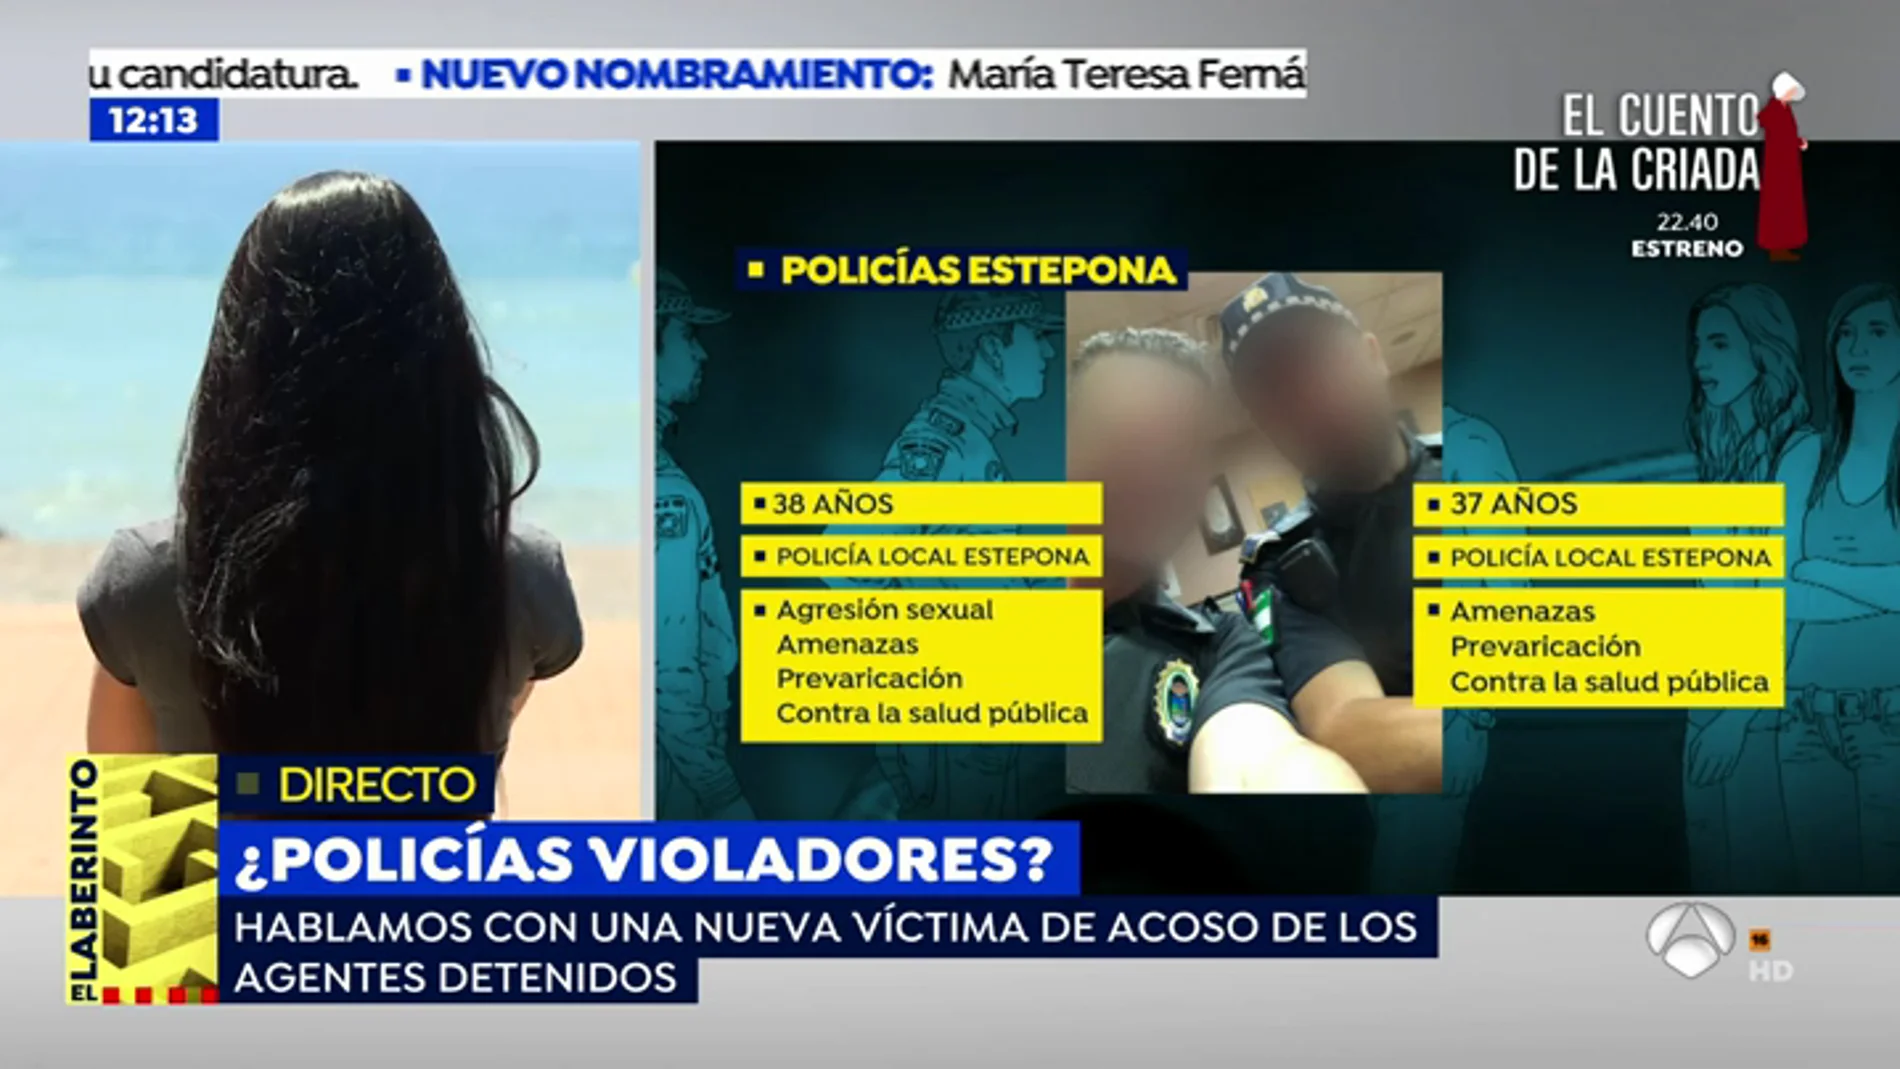   Una nueva joven denuncia acoso de los policías acusados de violación en Estepona